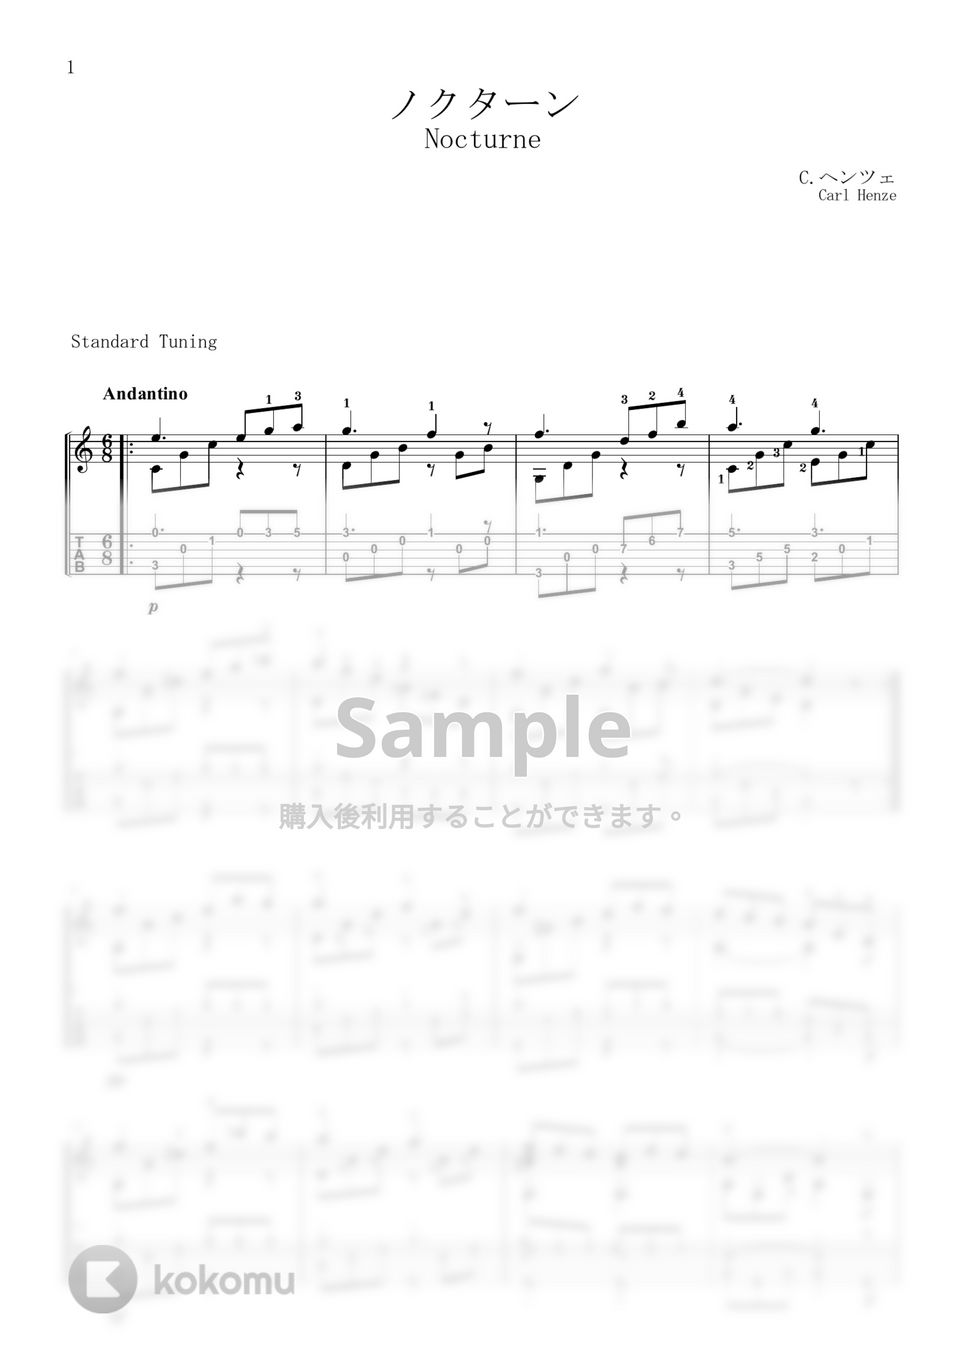 C.ヘンツェ - ノクターン (TAB譜) by 川口コウスケ